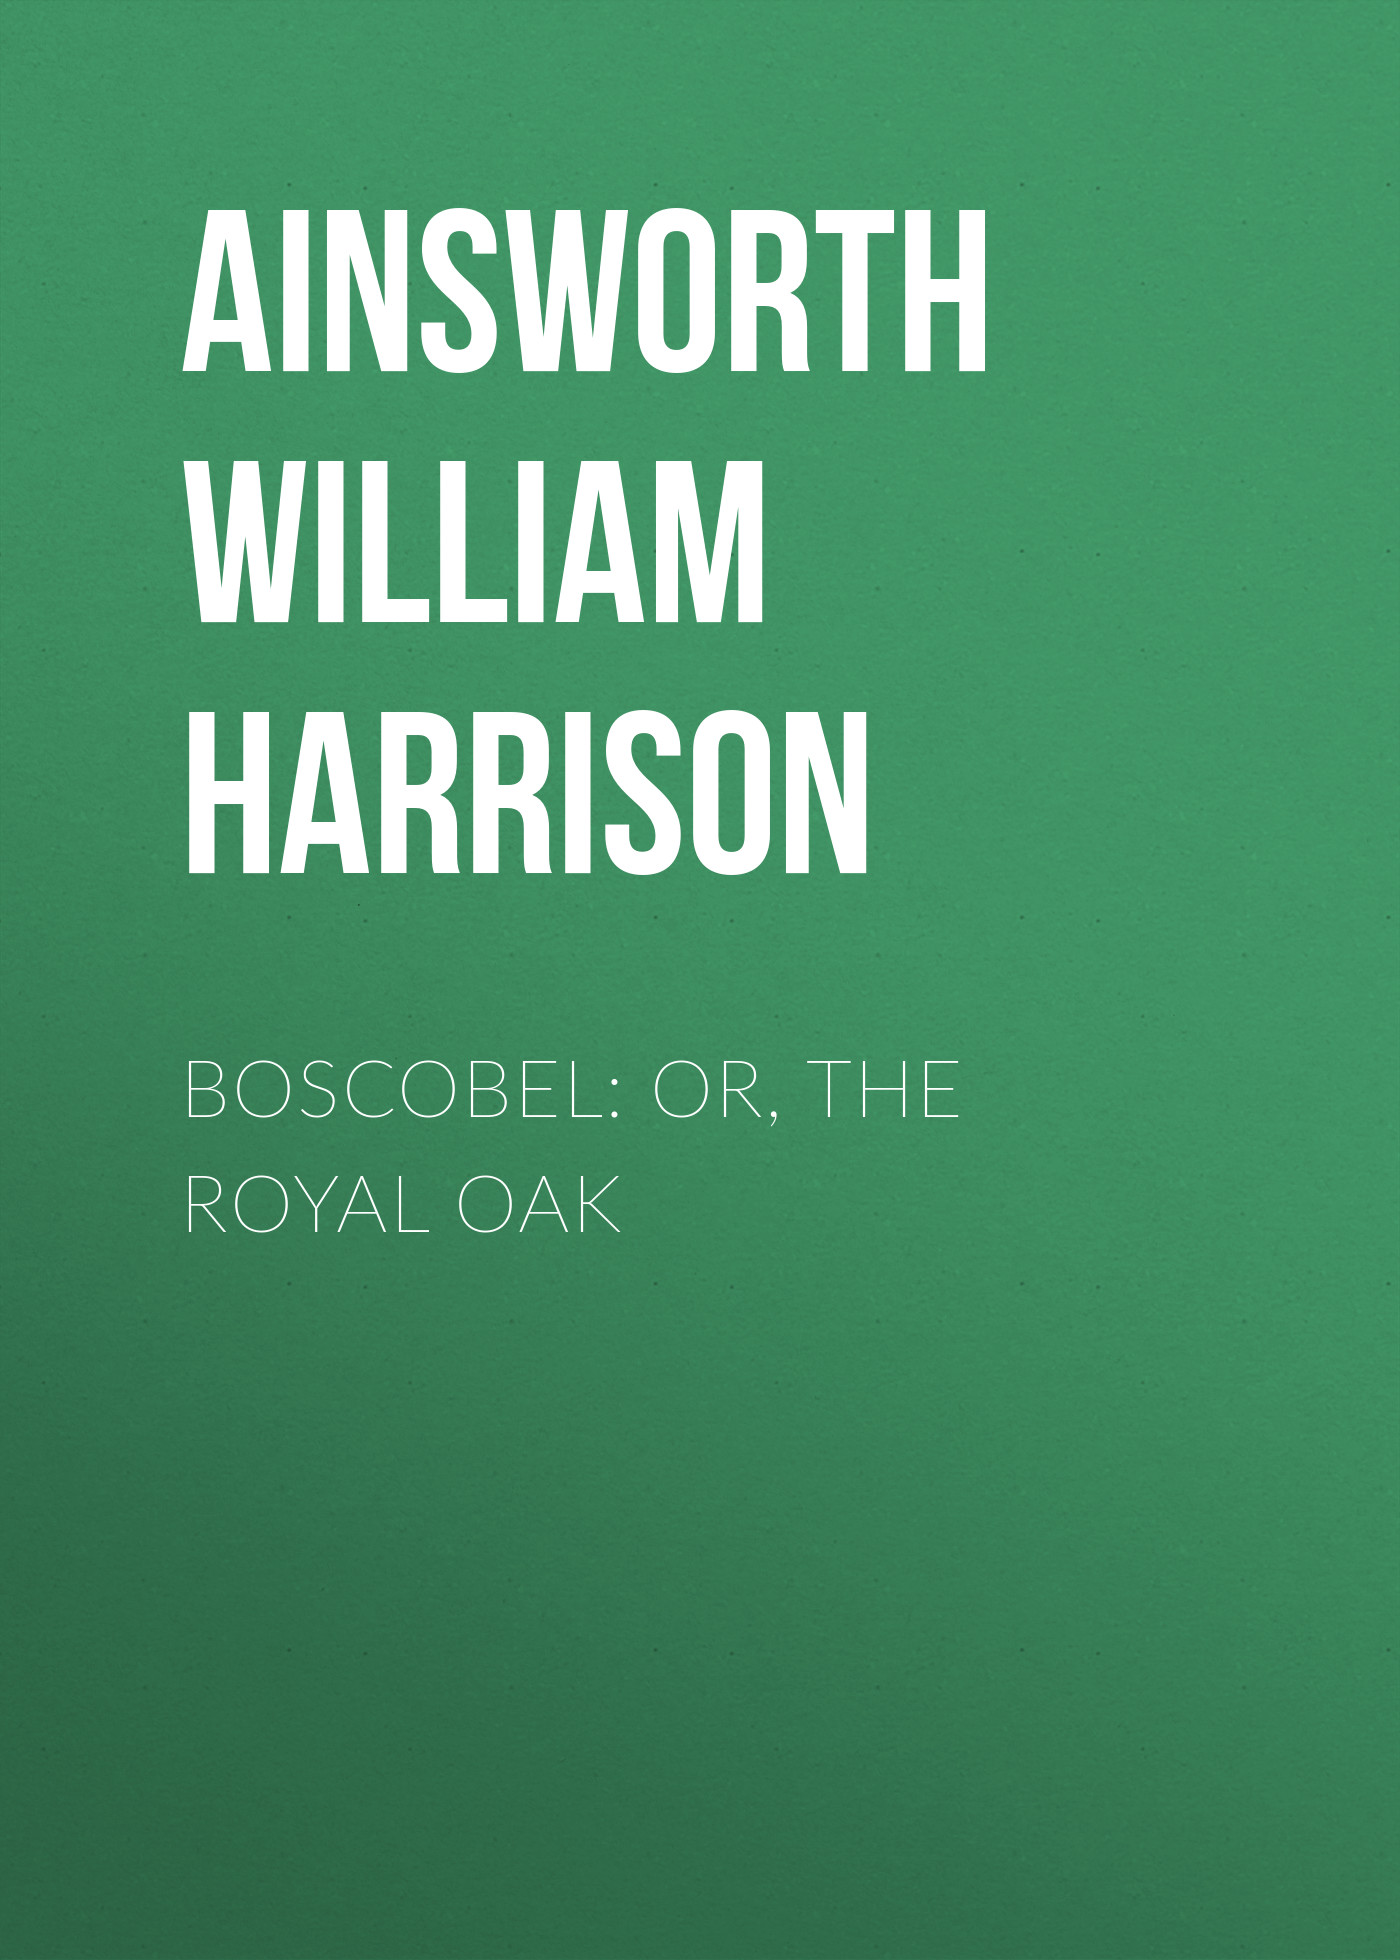 Книга Boscobel: or, the royal oak из серии , созданная William Ainsworth, может относится к жанру Иностранные языки, Зарубежная классика. Стоимость электронной книги Boscobel: or, the royal oak с идентификатором 23162579 составляет 0 руб.